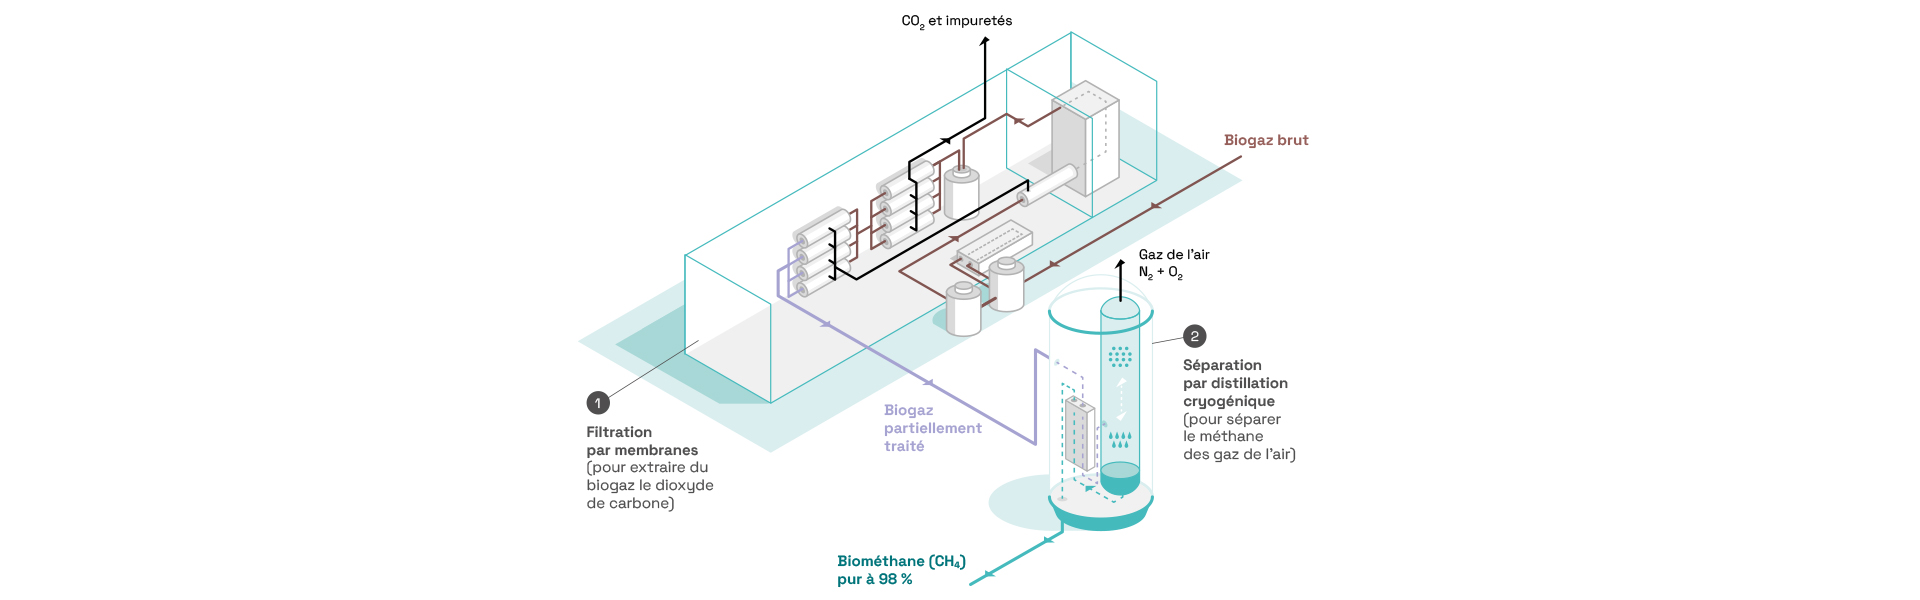 Schéma explicatif de la technologie WAGABOX. Le biogaz brut est traité par filtration membranaire pour séparer le dioxyde de carbone du méthane. Les impurtés et le CO2 présent dans le gaz sont expulsés du circuit. Le biogaz partiellement traité passe ensuite dans le module de séparation cryogénique qui sépare le méthane des gaz de l'air grâce à de l'azote. Les gaz de l'air sont expulsés du circuit. Le biométhane pur à 98 % est ensuite injecté dans le réseau de distribution du gaz.